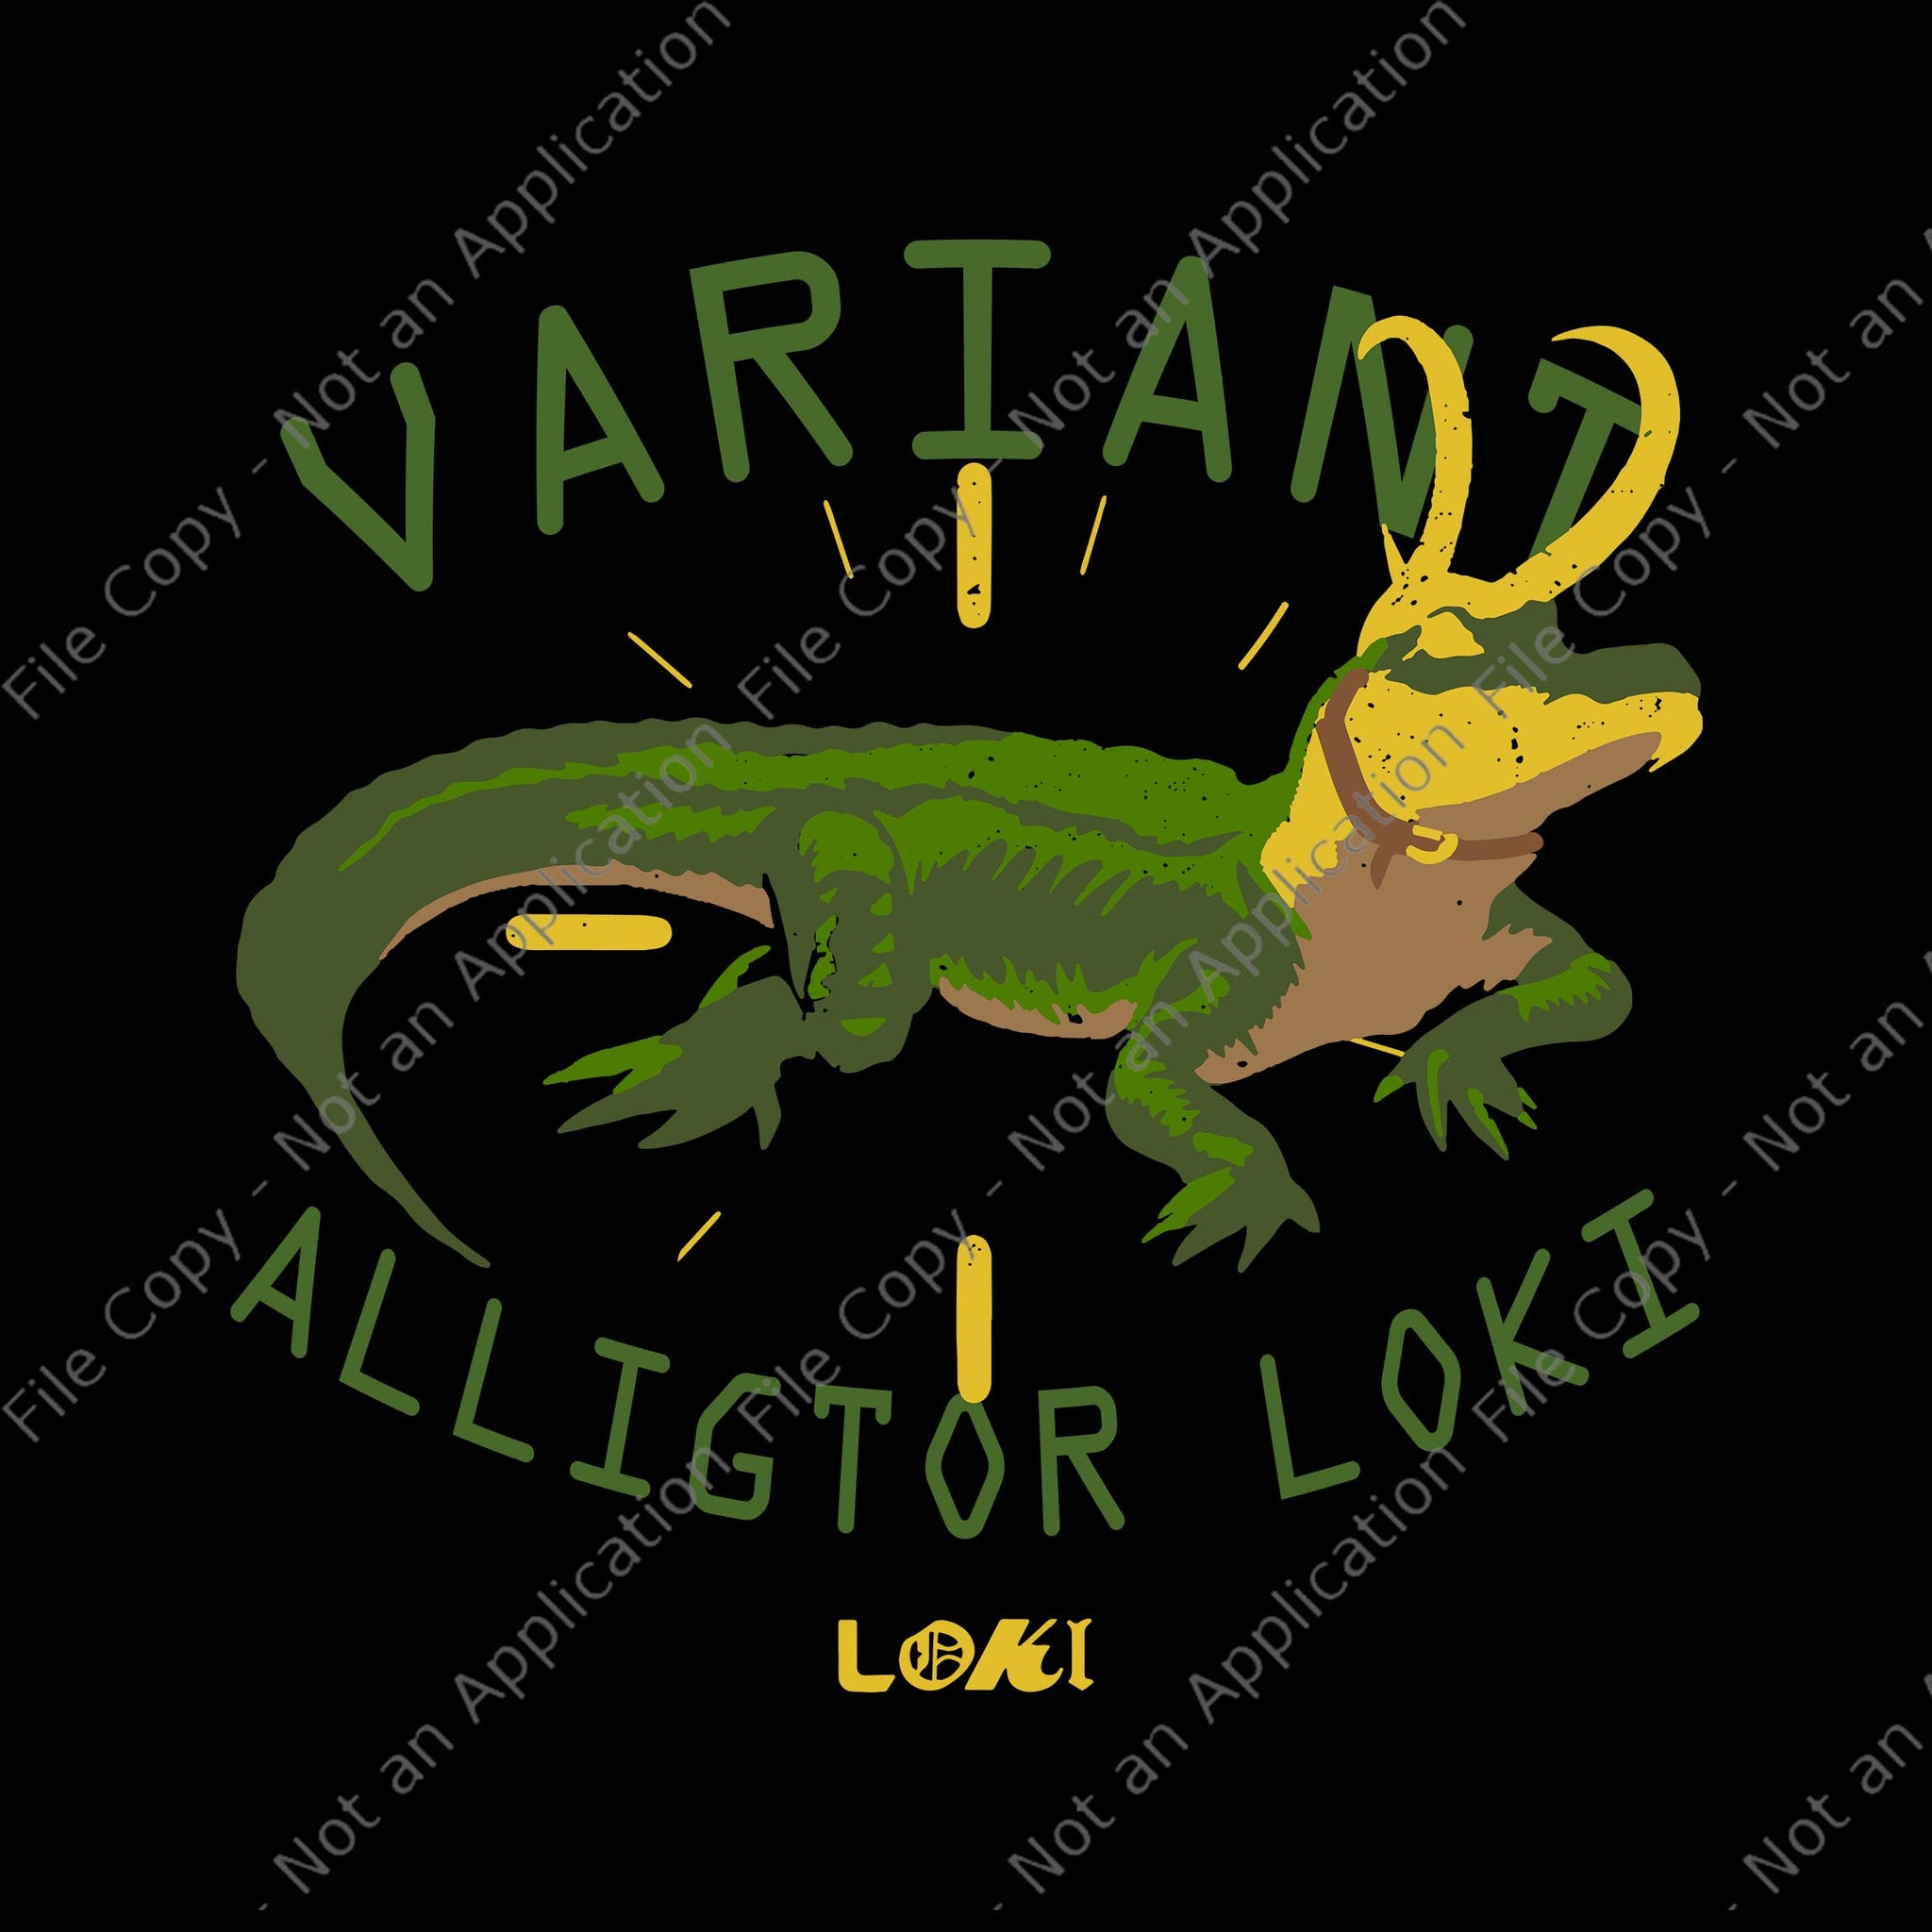 Marvel Loki Alligator Variant SVG, Marvel Loki Alligator Variant, Variant Alligator Loki svg, Variant Alligator Loki